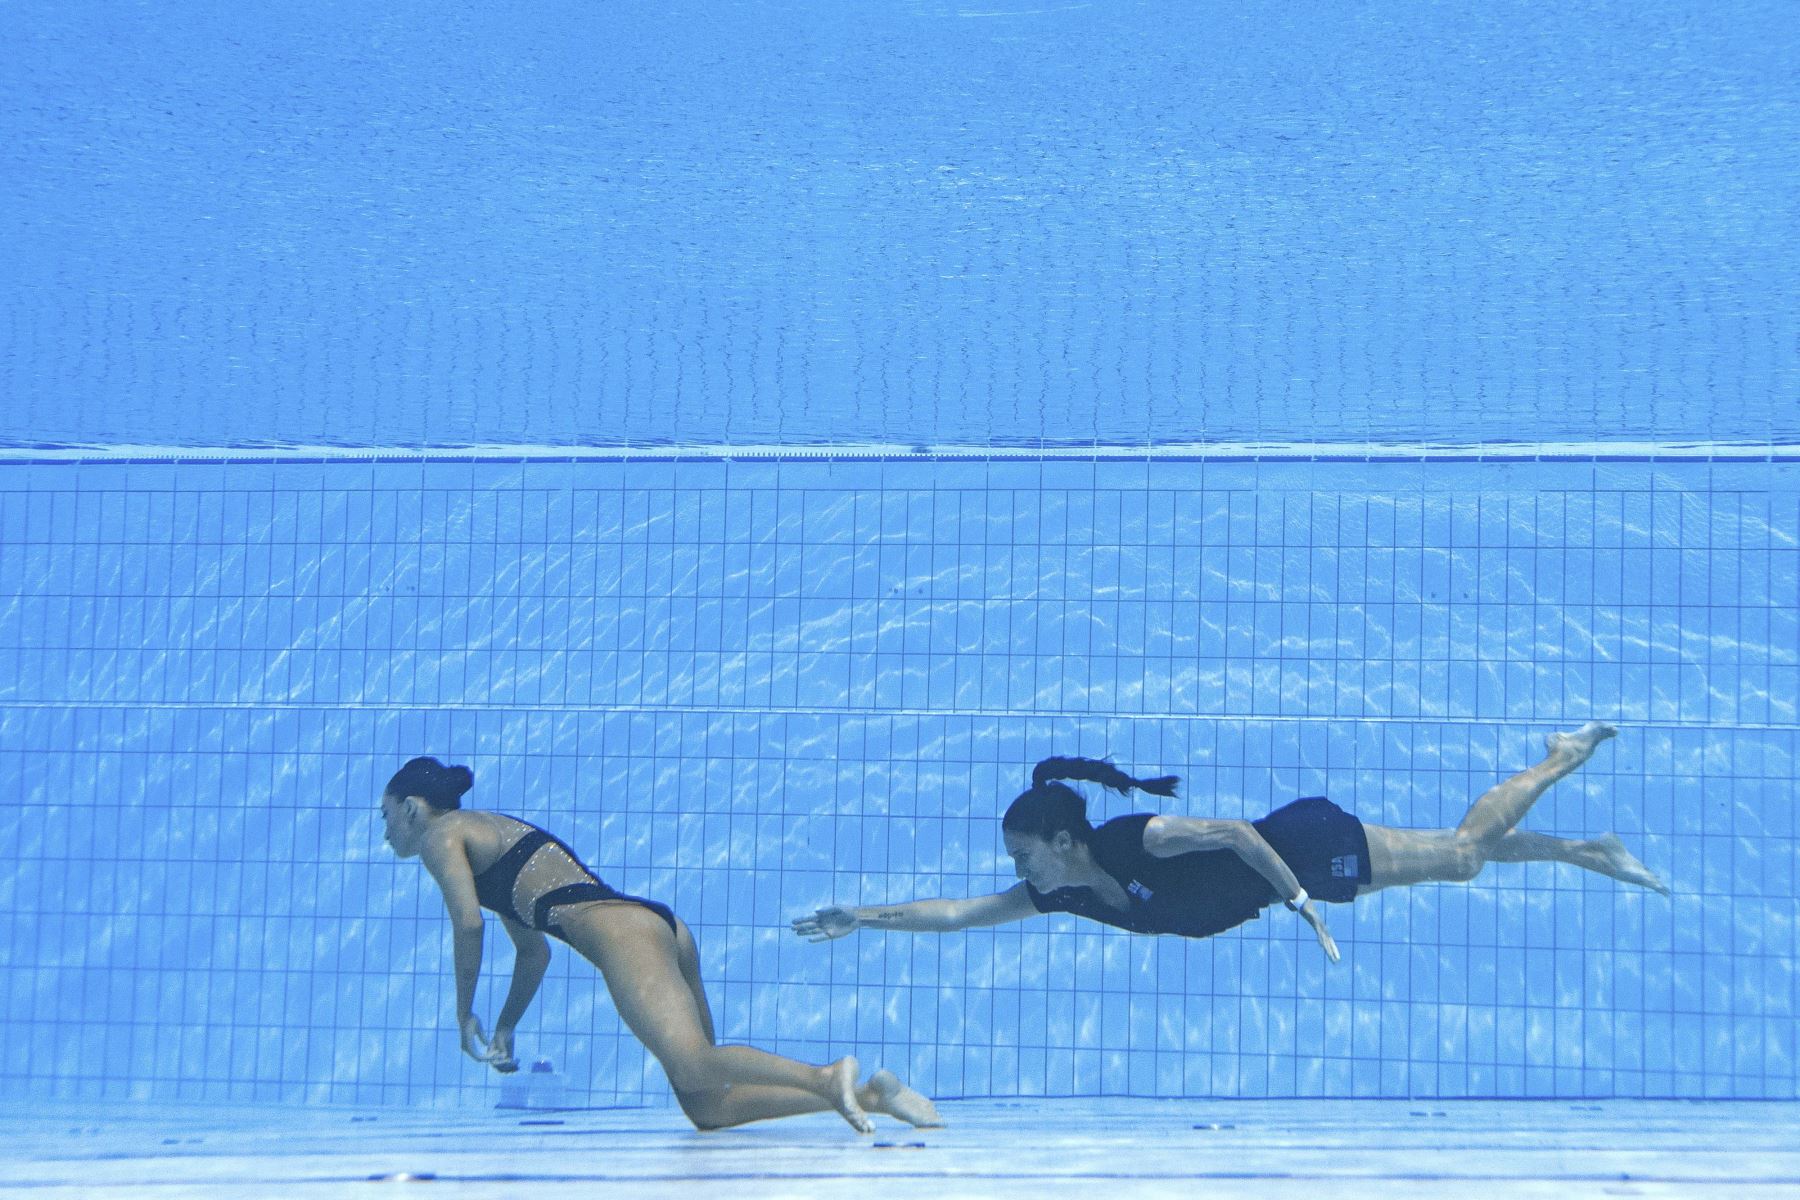 La entrenadora española, Andra Fuentes, nada para salvar a Anita Alvarez del fondo de la piscina durante un incidente en las finales de natación artística libre en solitario de mujeres, durante el Campeonato Mundial Acuático de Budapest 2022. Foto: AFP